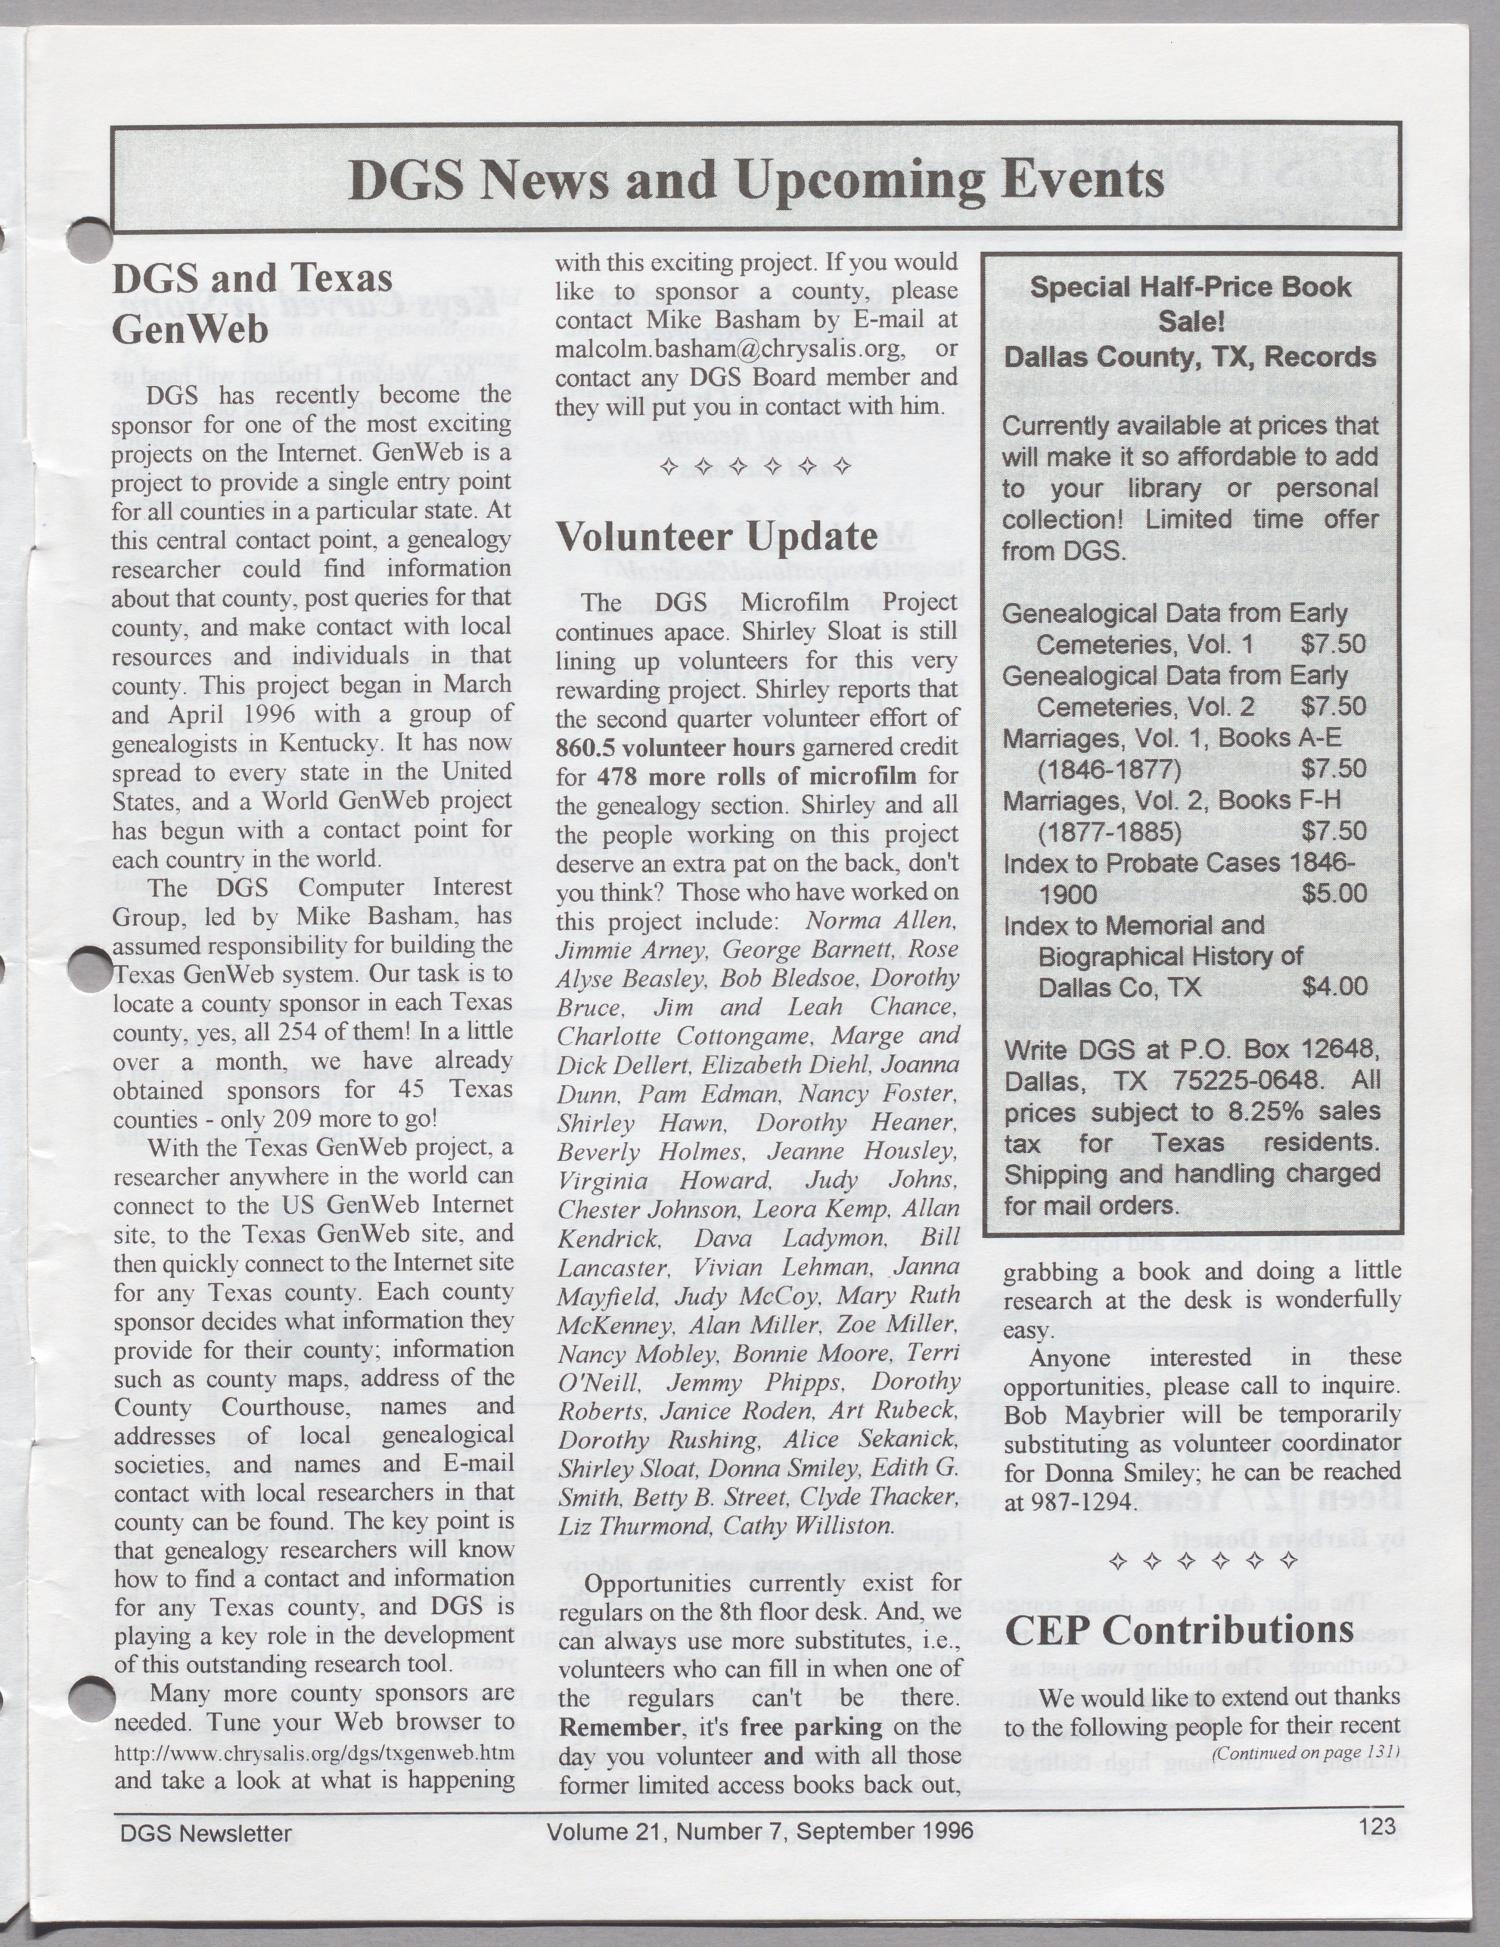 DGS Newsletter, Volume 2[0], Number 7, September 1996
                                                
                                                    123
                                                